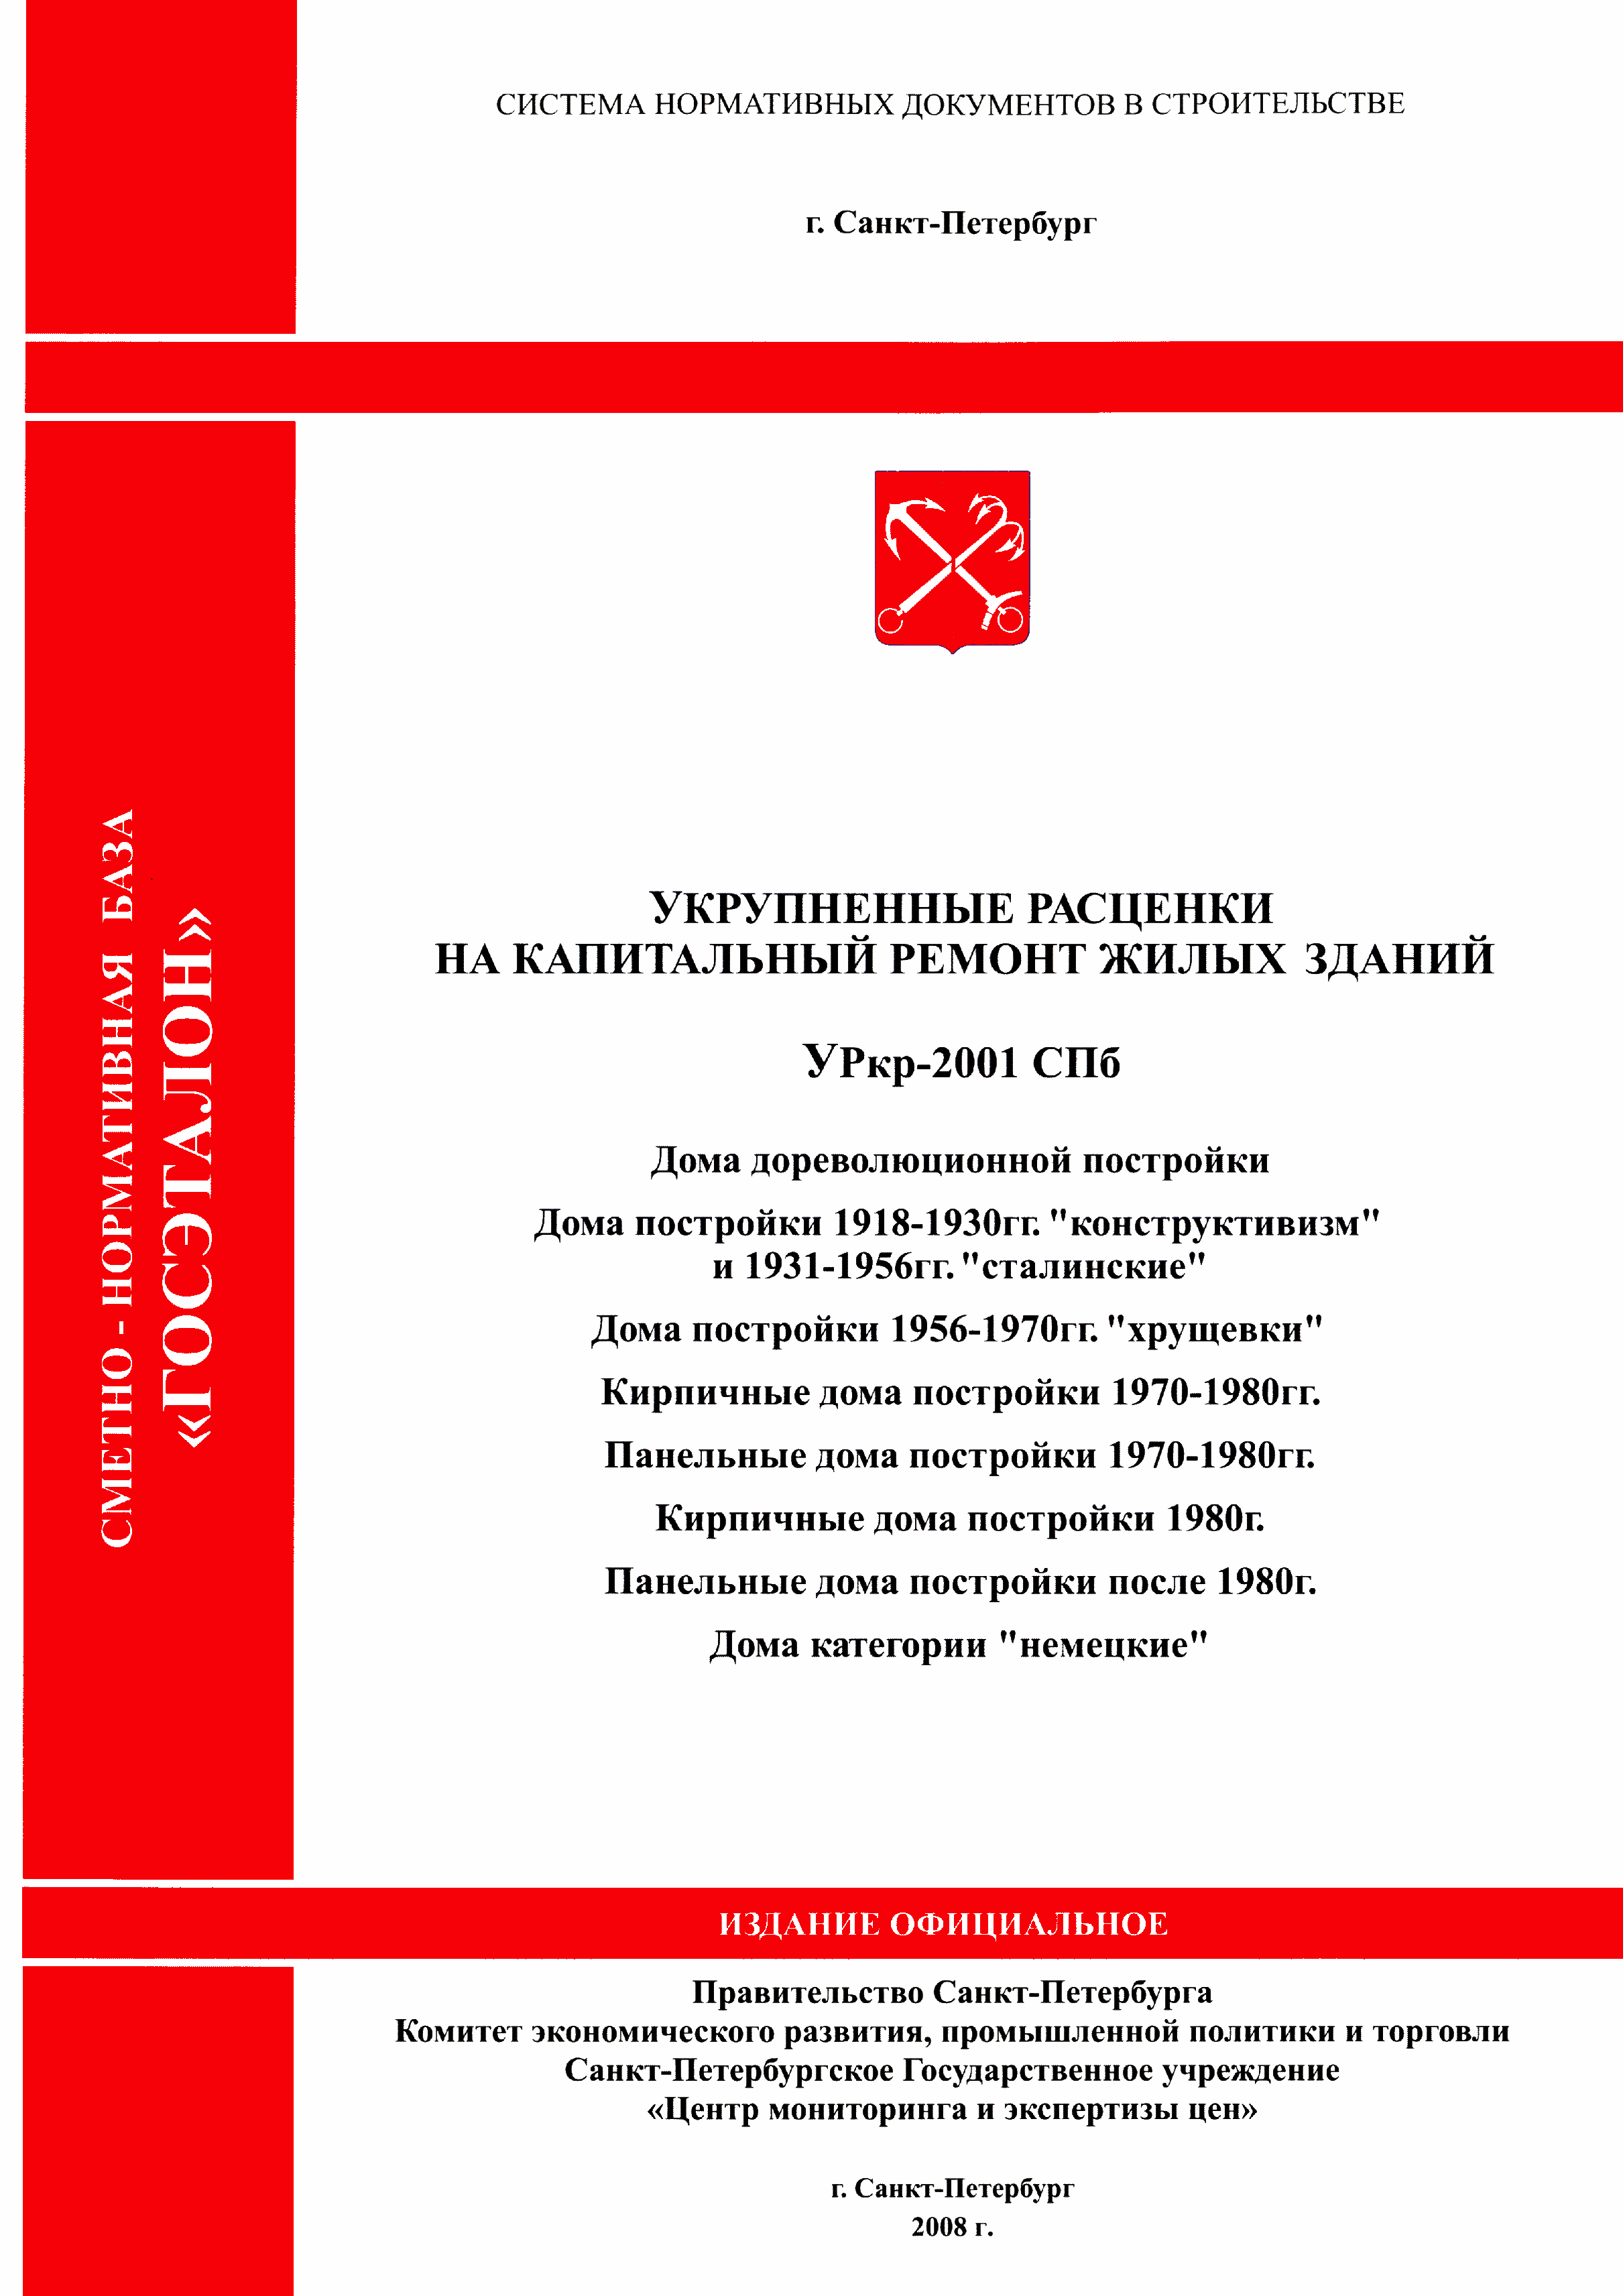 УРкр 08-2001 СПб